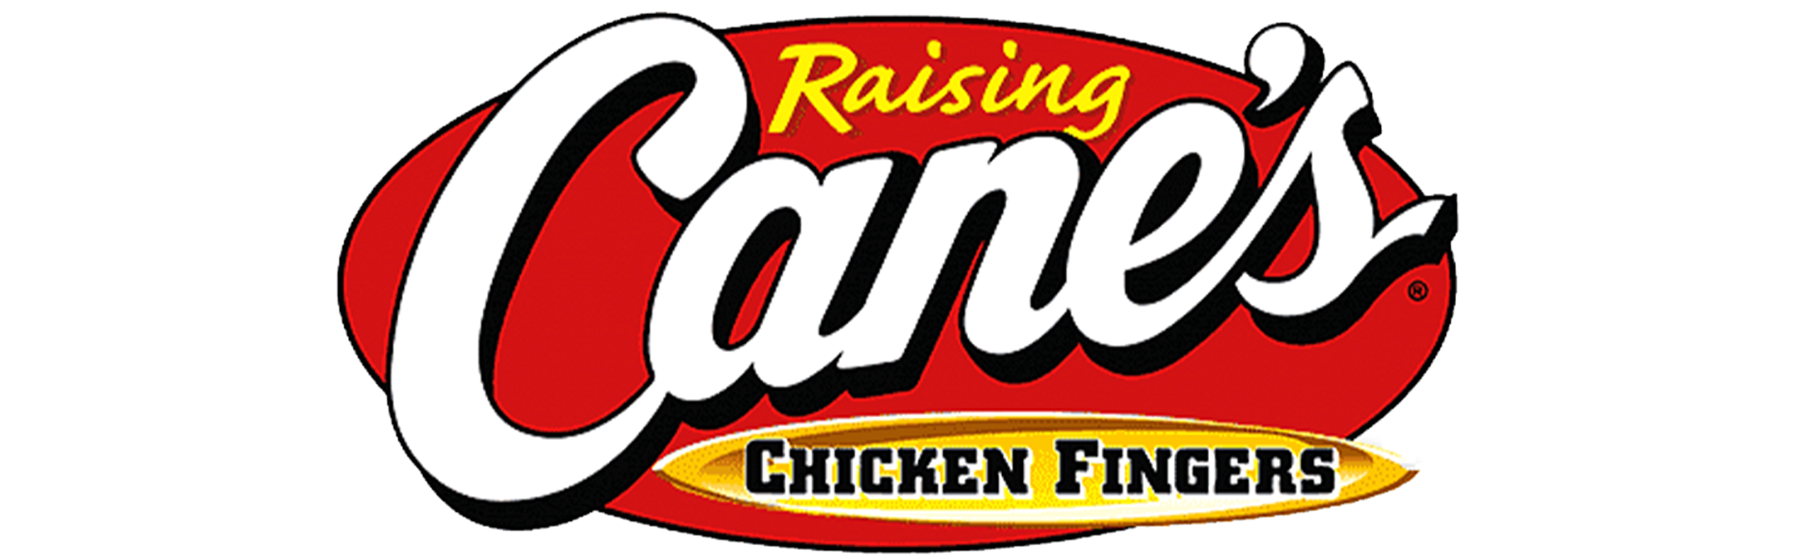 Raising-Cane-2